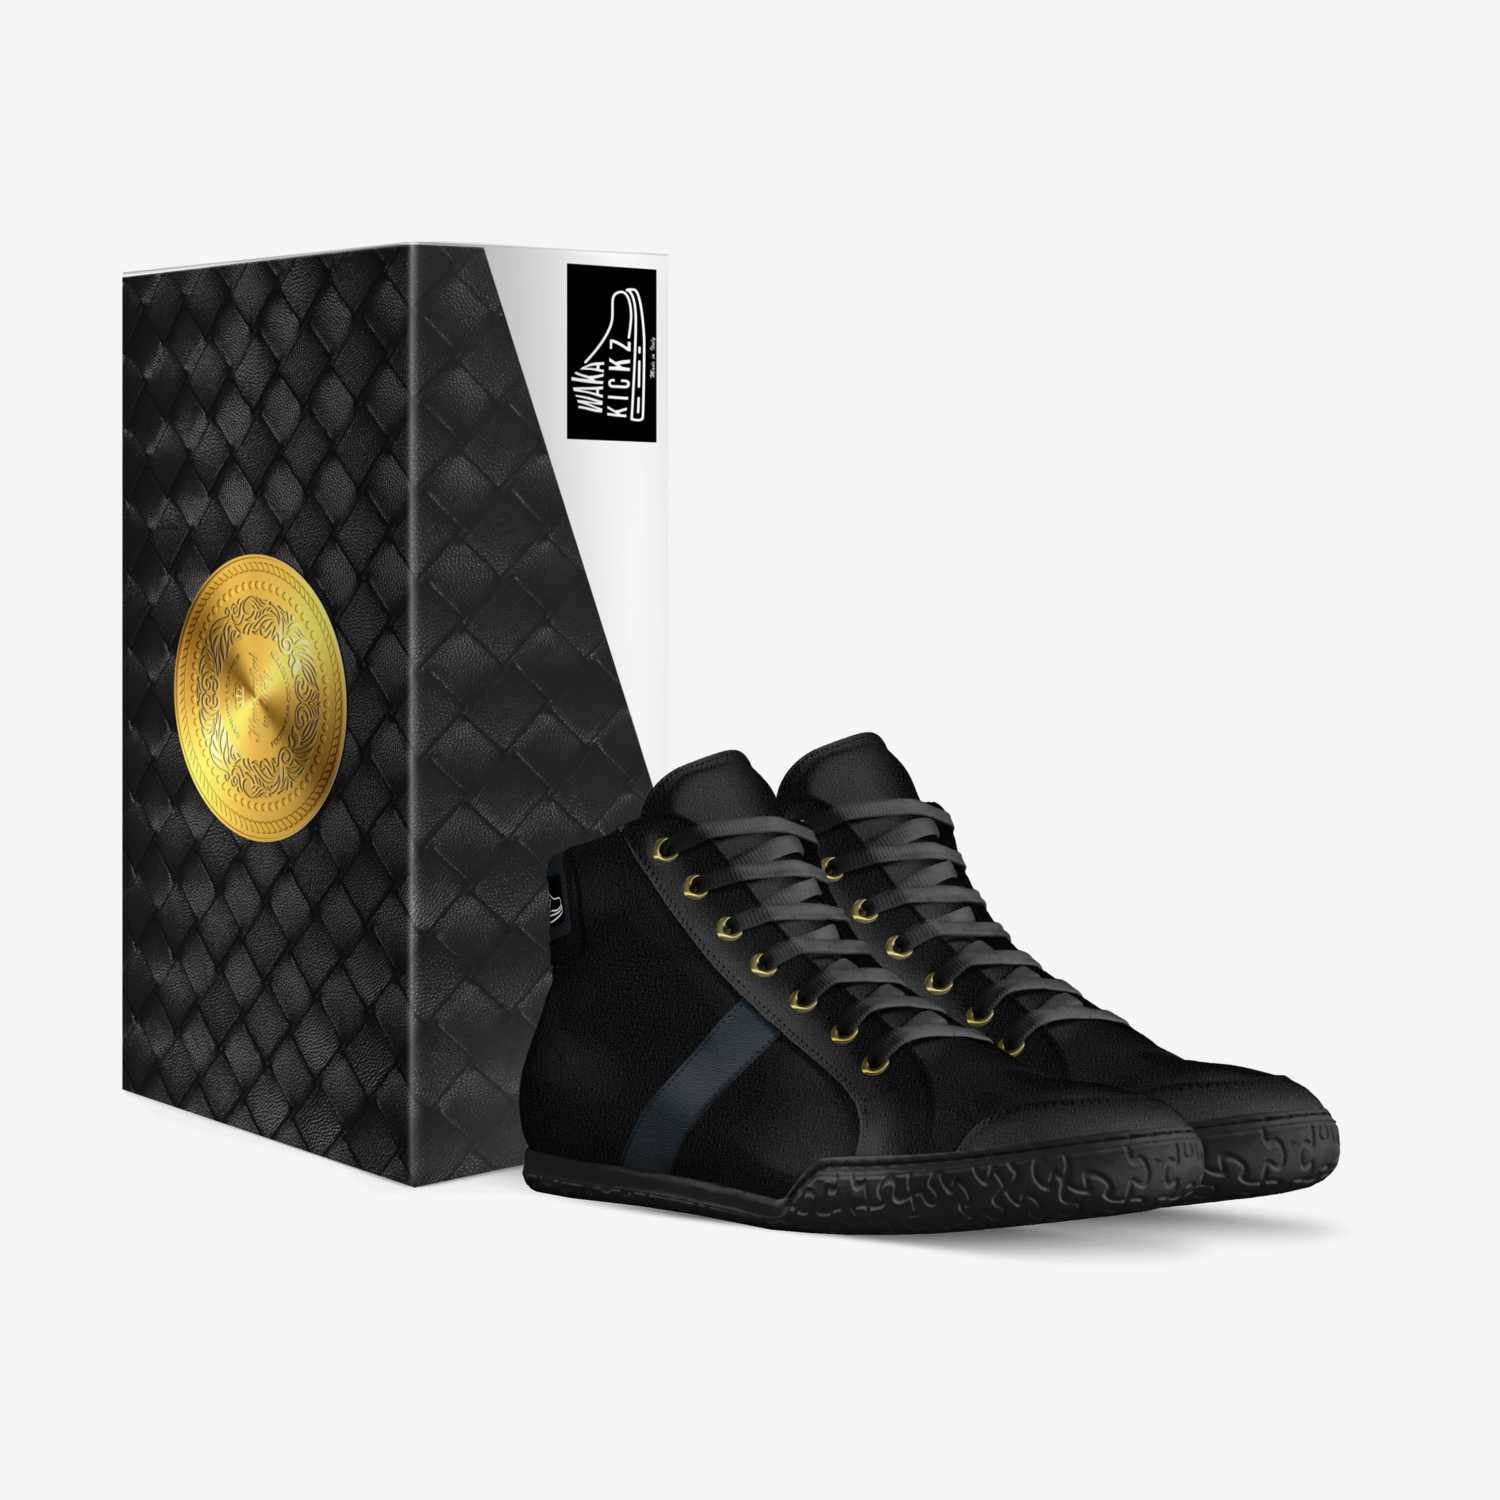 WakaKickz CSB1 custom made in Italy shoes by Tunde Olanipekun | Box view